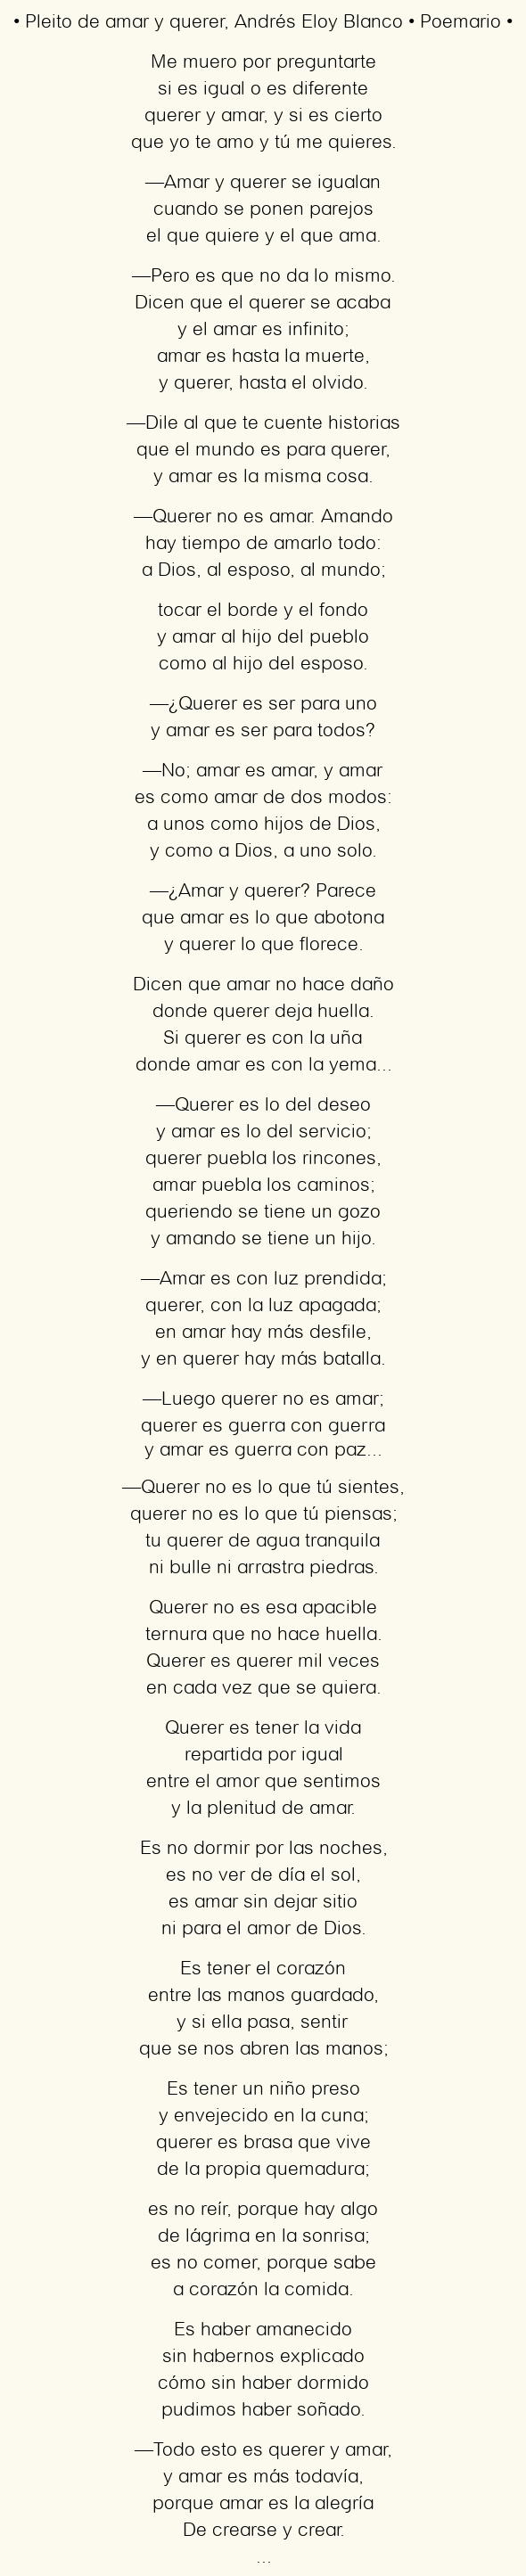 Imagen con el poema Pleito de amar y querer, por Andrés Eloy Blanco